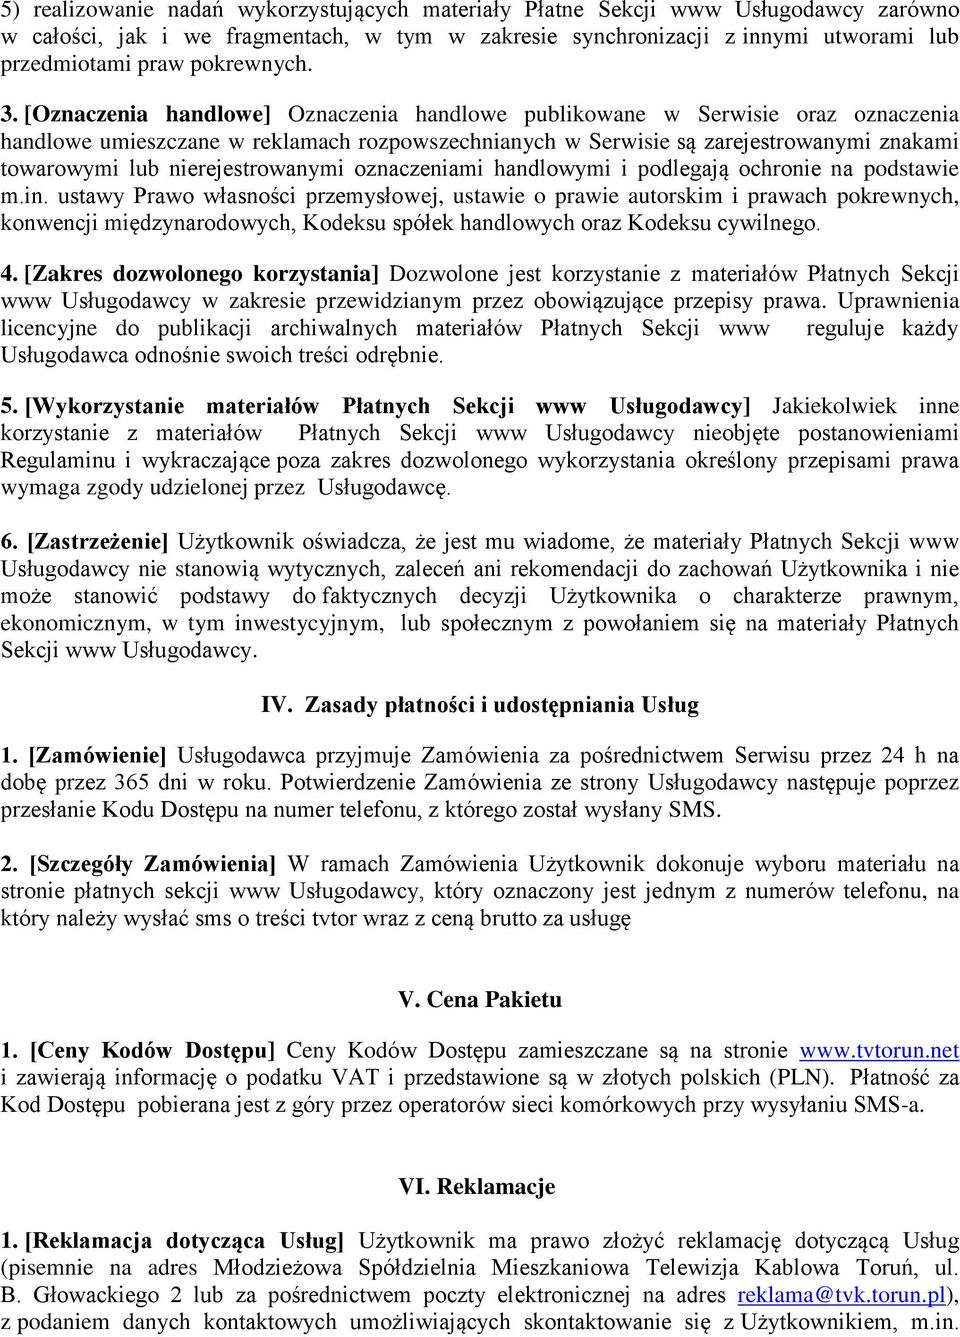 [Oznaczenia handlowe] Oznaczenia handlowe publikowane w Serwisie oraz oznaczenia handlowe umieszczane w reklamach rozpowszechnianych w Serwisie są zarejestrowanymi znakami towarowymi lub